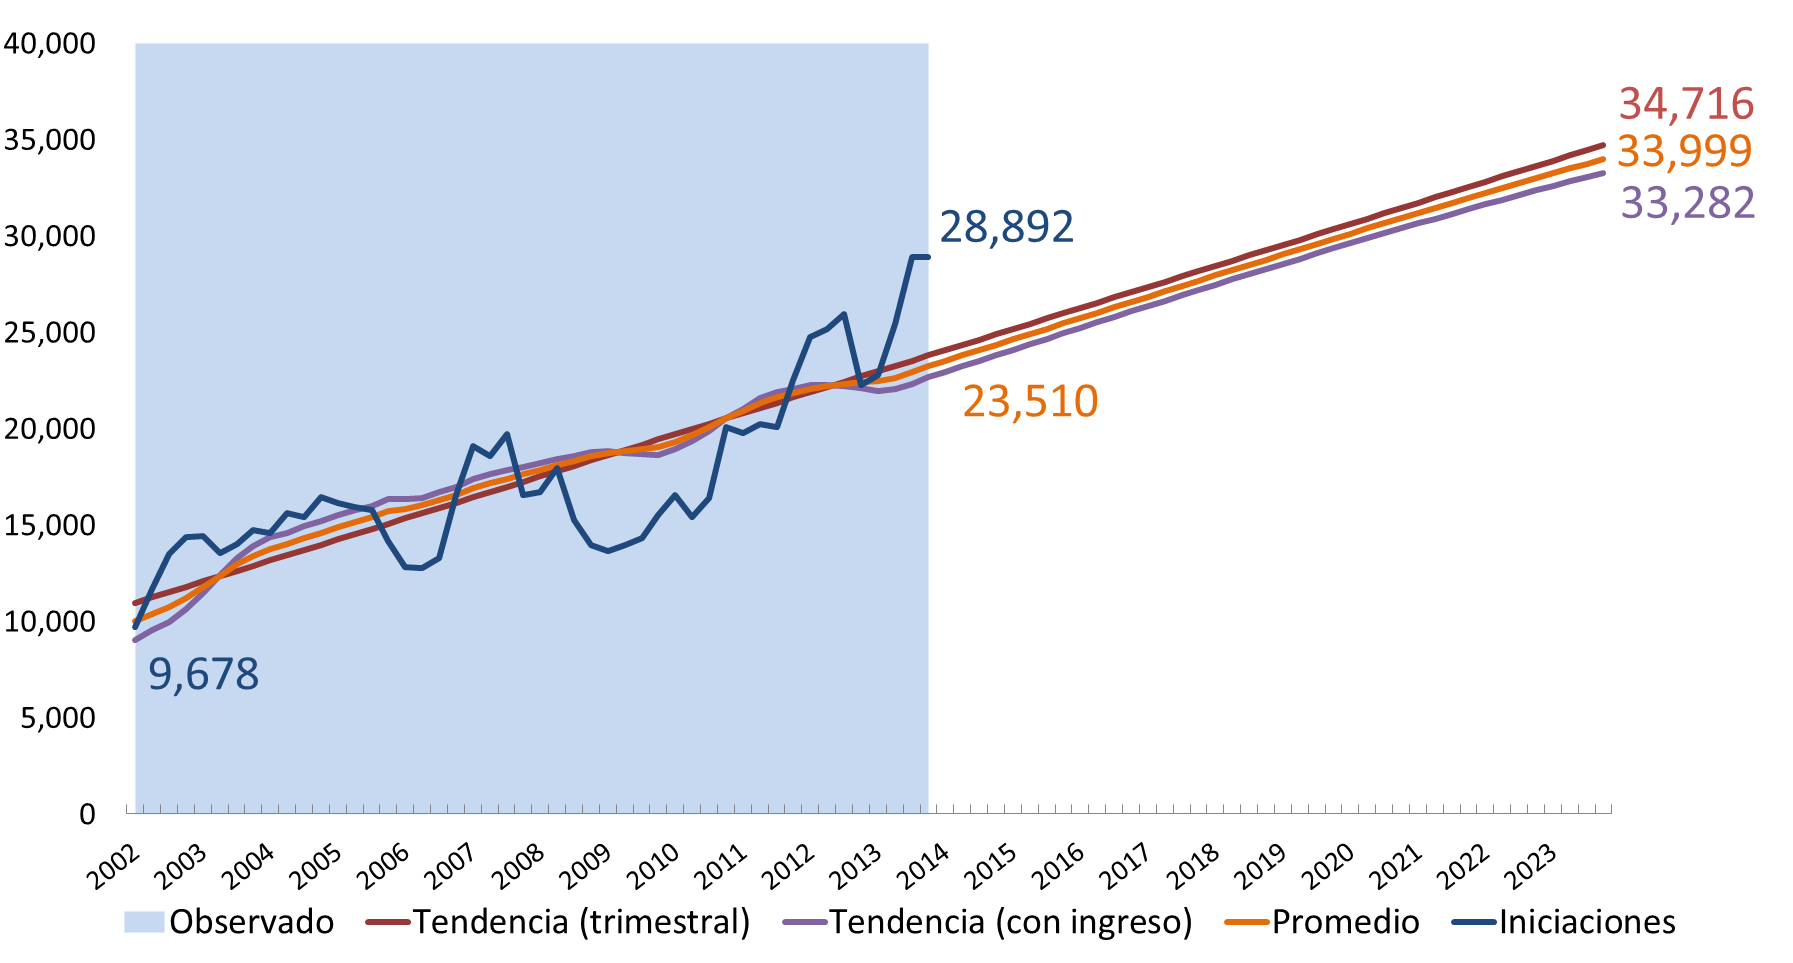 Proyección de iniciaciones para Medellín, 2014-2023 Fuente: DANE -Proyecciones de población y Gran Encuesta Integrad de Hogares (GEIH).